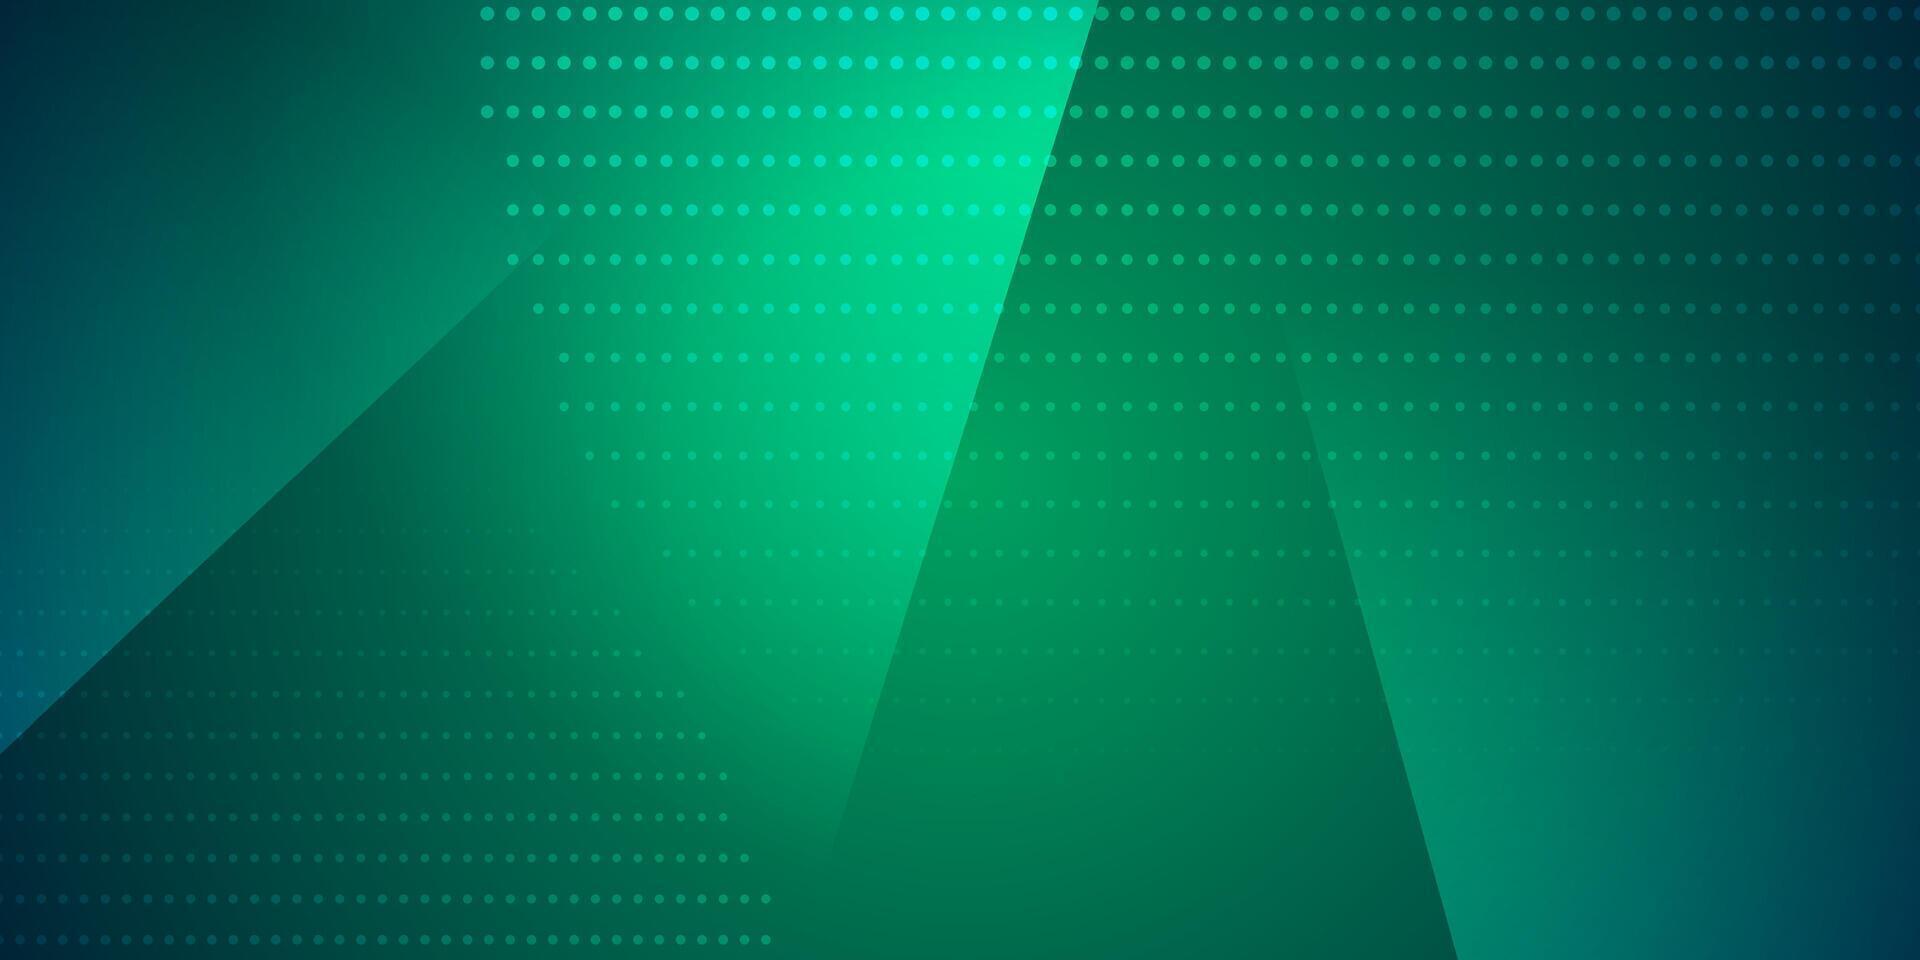 Grün Blau abstrakt modern Hintergrund mit gepunktet Linien vektor